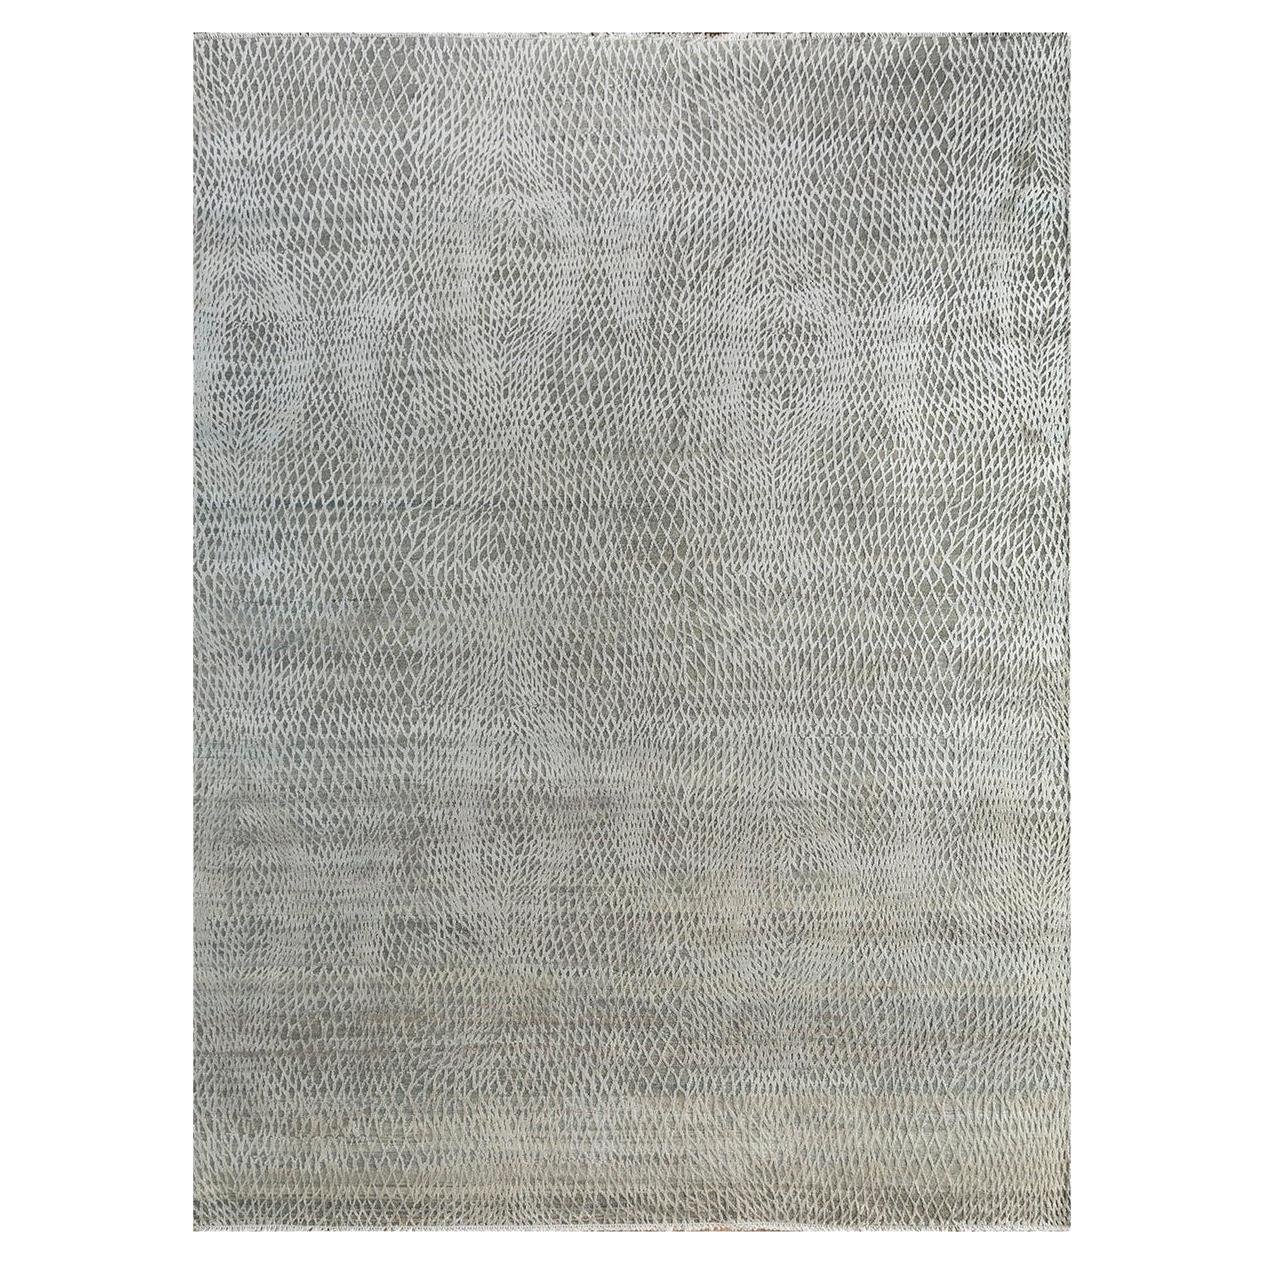  Teppich von Rural Weavers, geknüpft, Wolle, 270x360cm